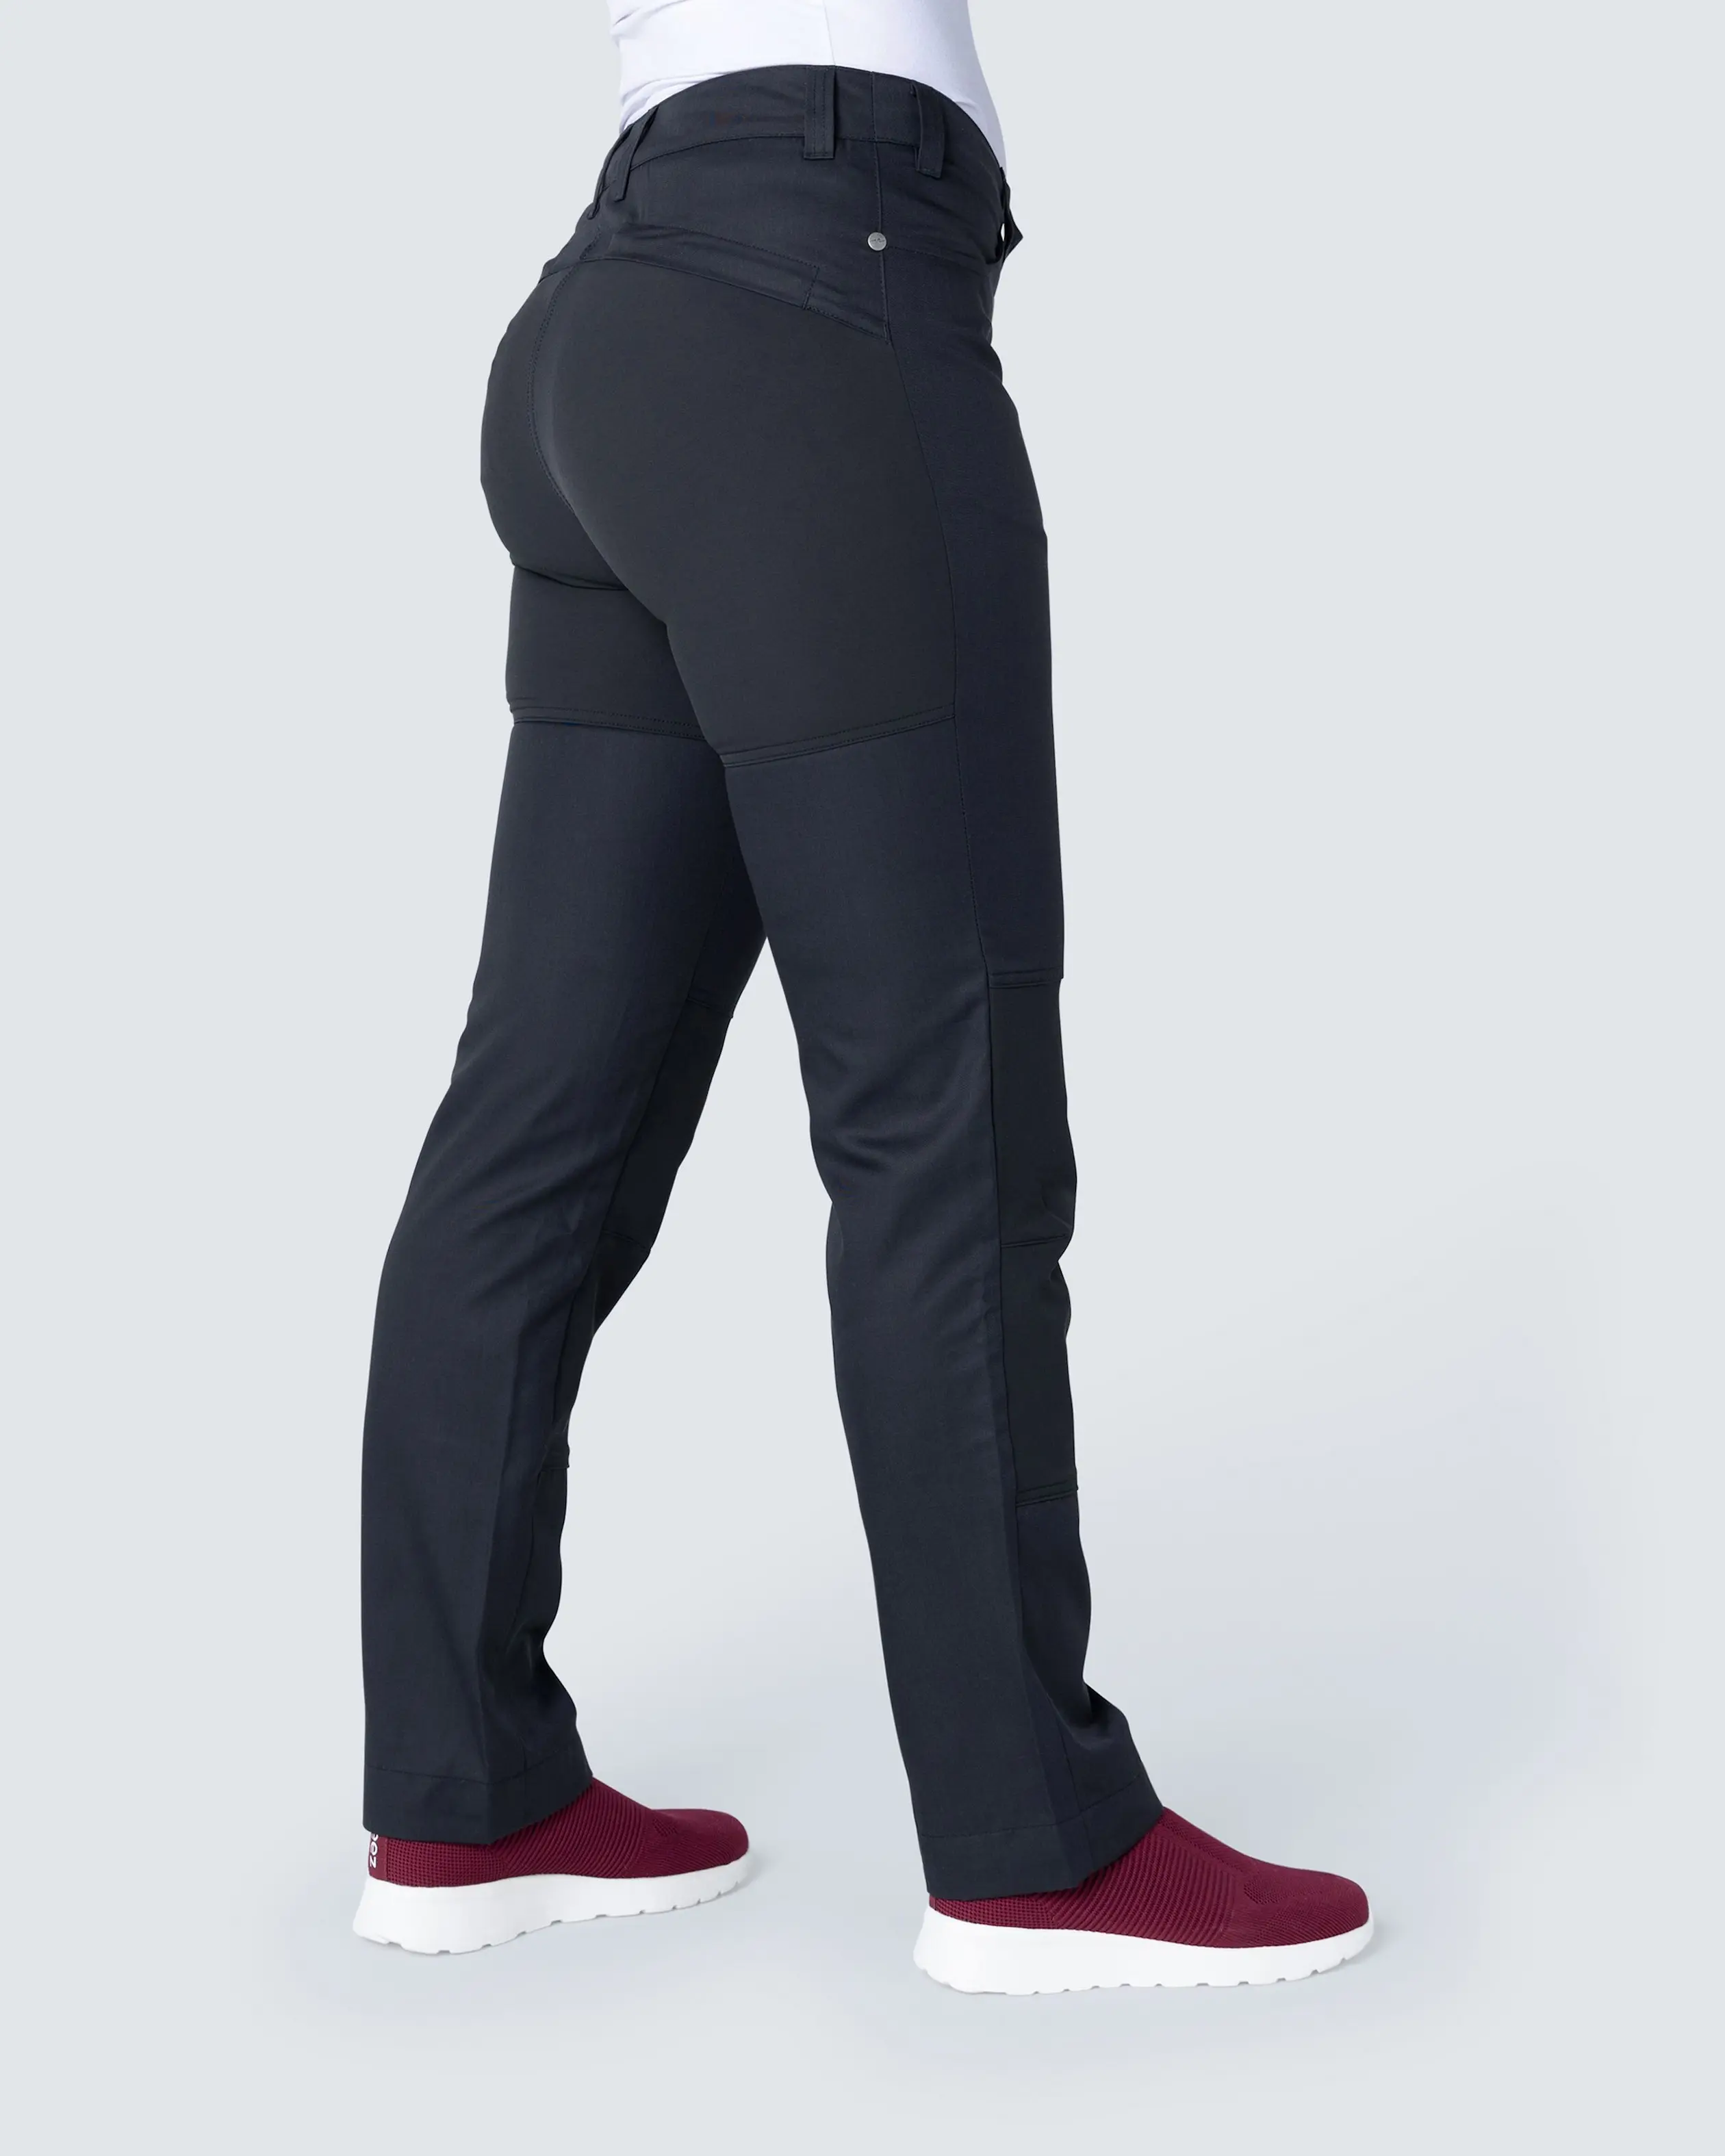 Bangladesh naturlig jeans Nytello Stretch Sort Buks Dame | Køb på color4care